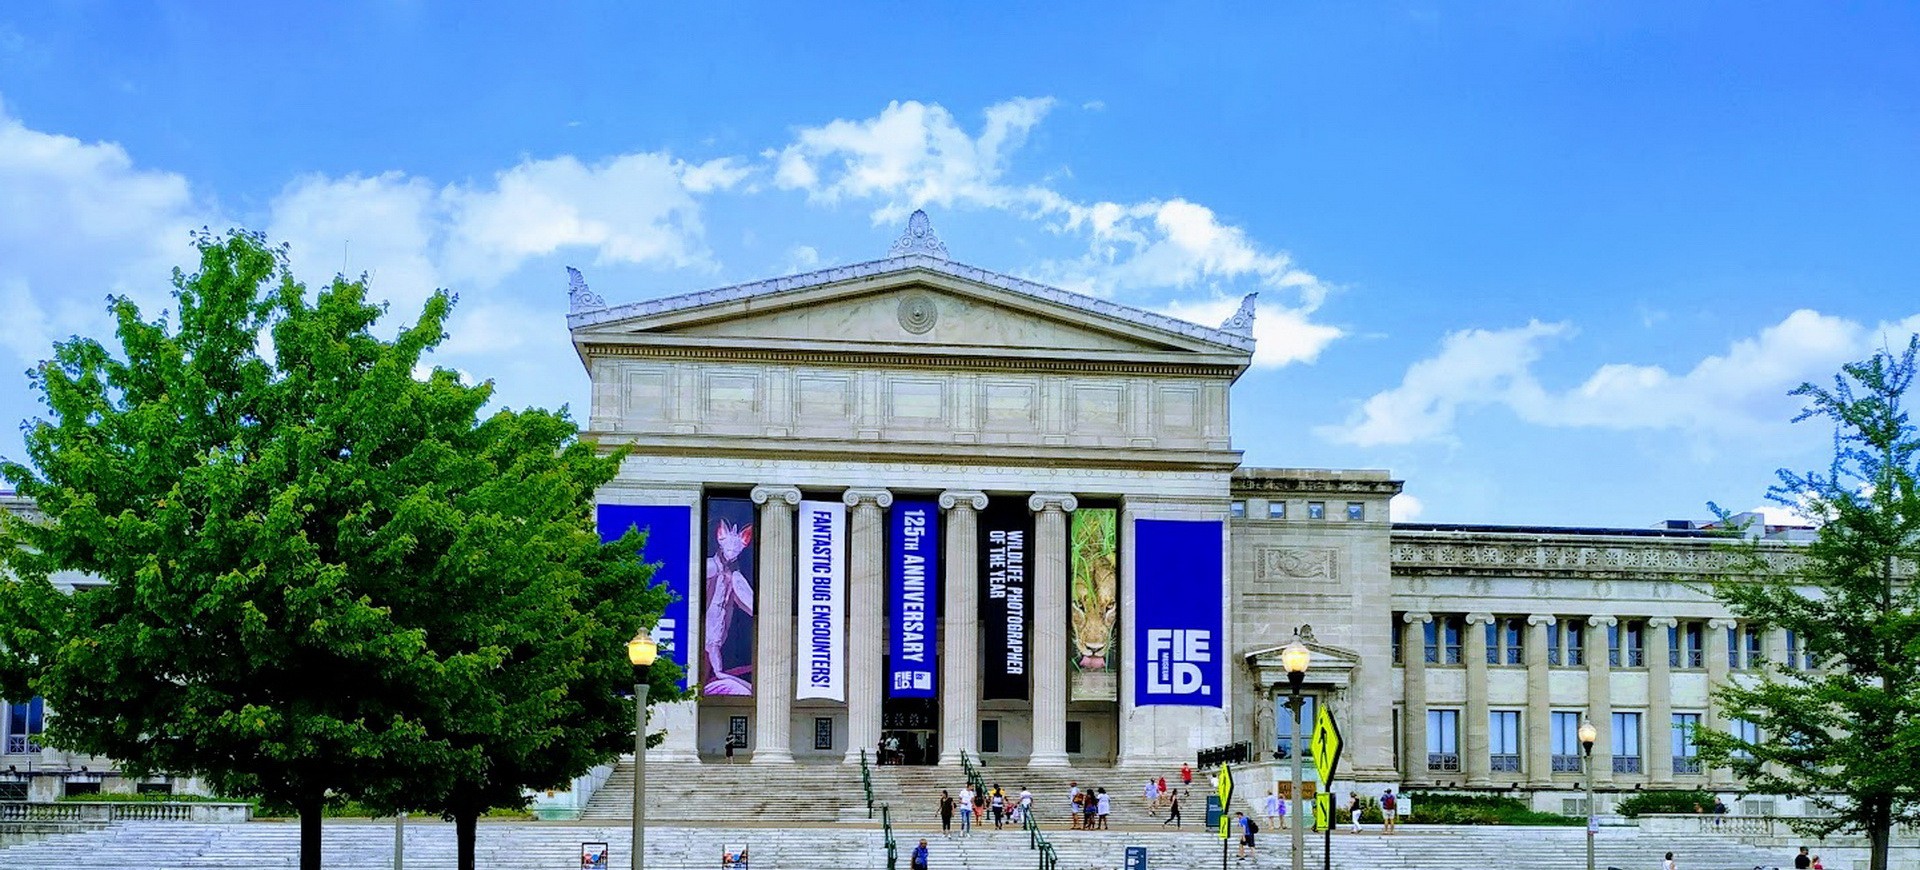 Etats Unis Chicago museum